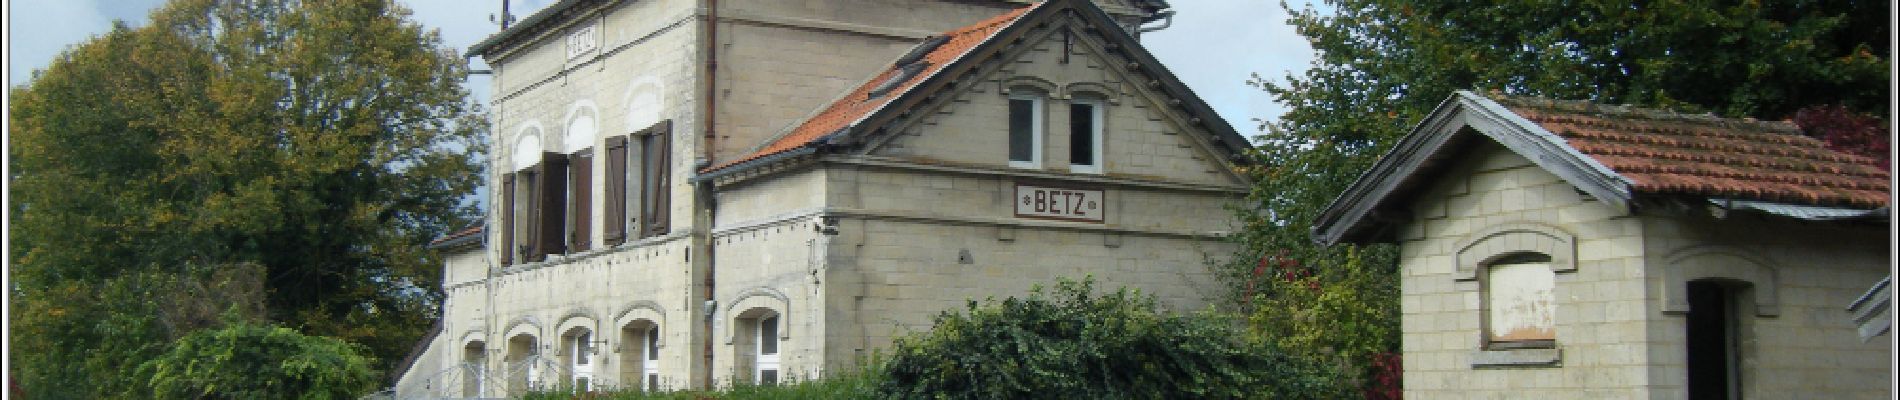 Point d'intérêt Betz - Ancienne gare de Betz - Photo